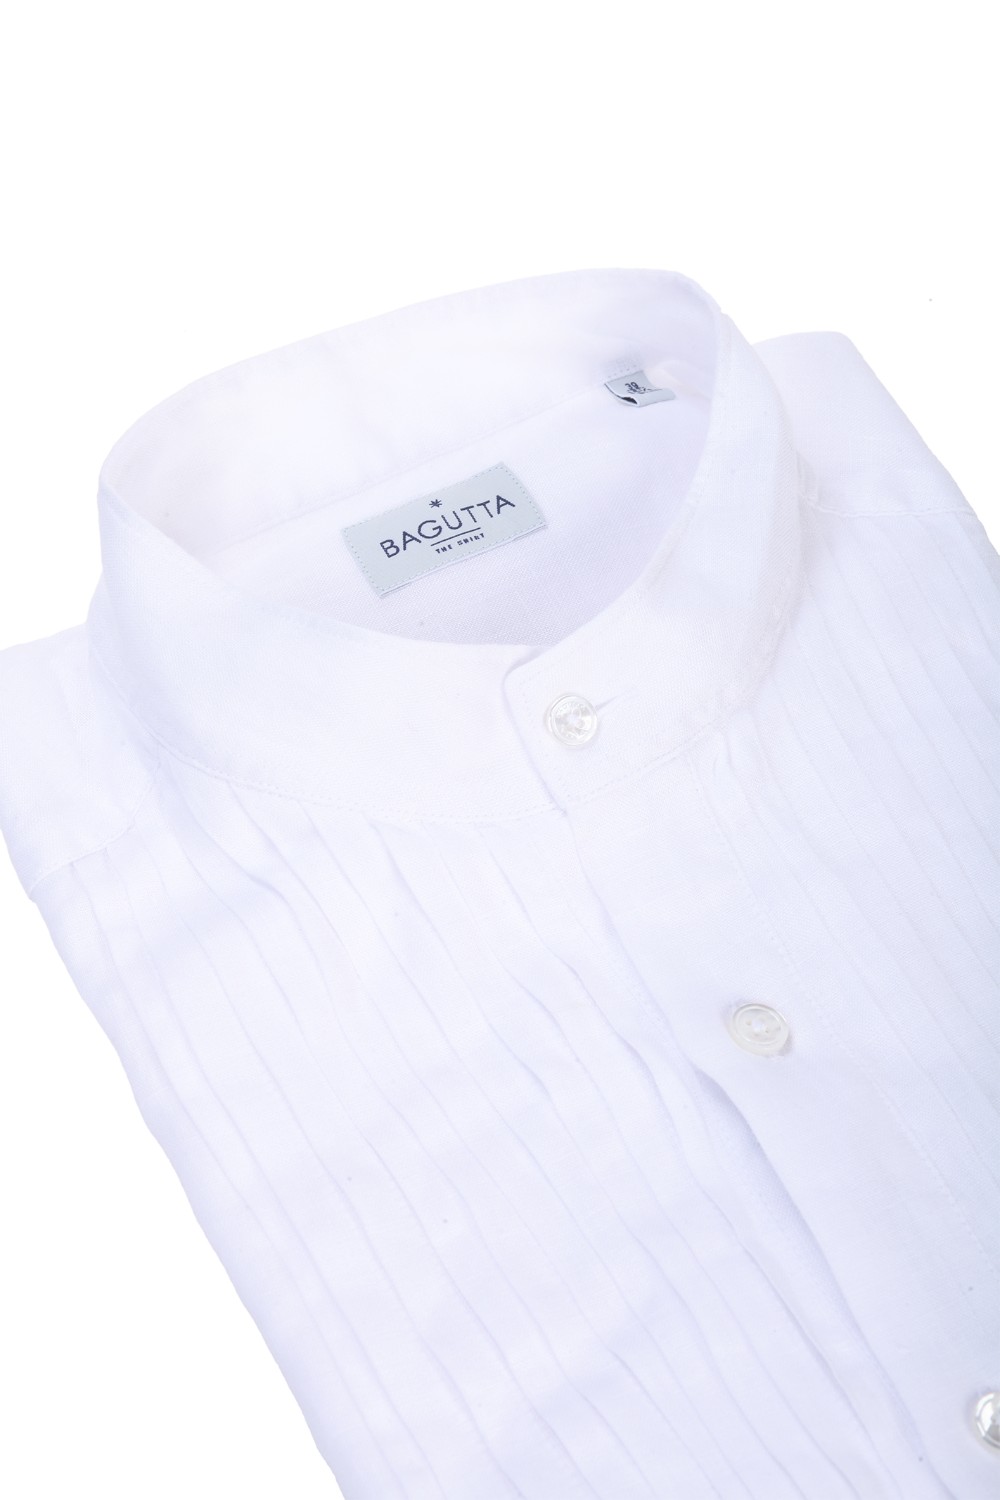 shop BAGUTTA Saldi Camicia: Bagutta camicia bianca.
Pieghe plissè sul davanti.
Vestibilità slim.
Collo coreano.
100% lino.. TROPEZ EBL CN0045-001 number 5965119